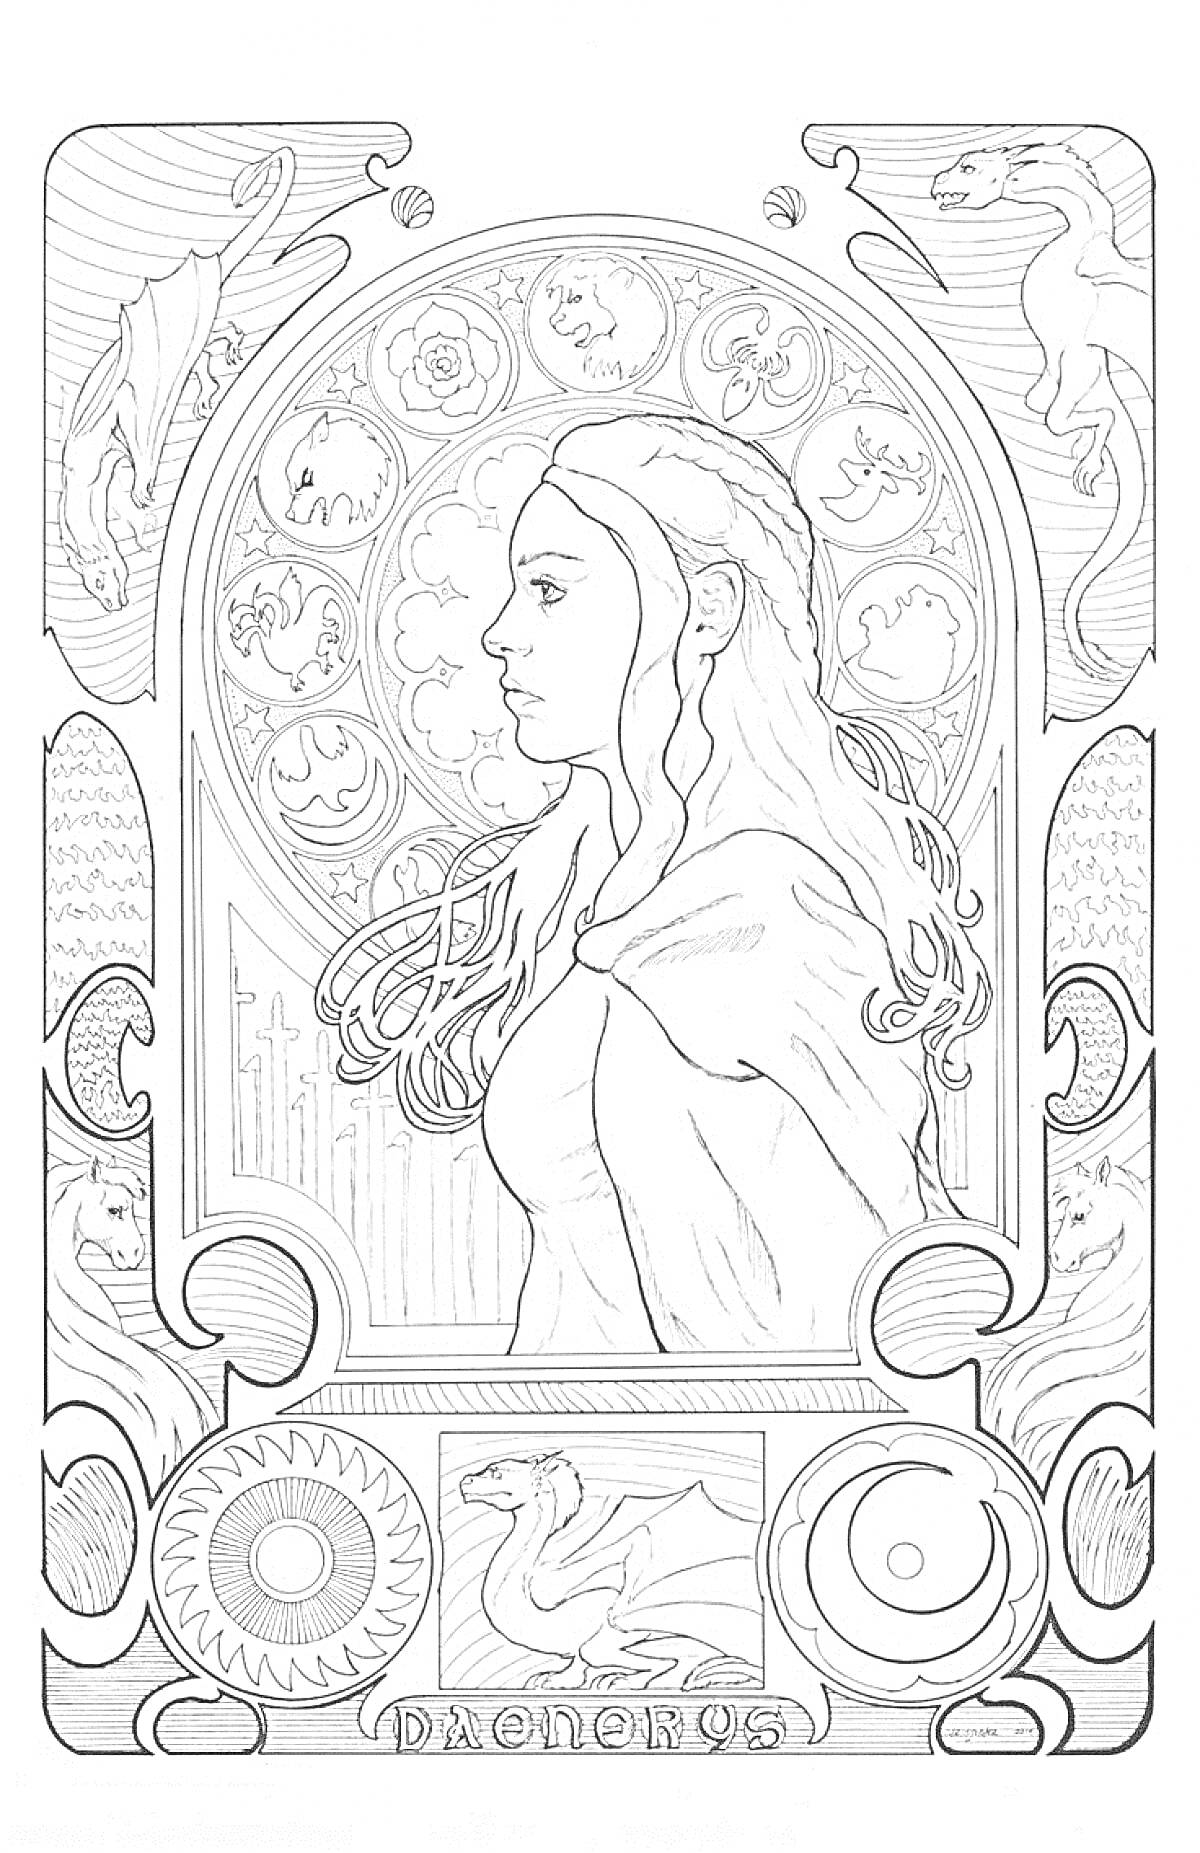 Раскраска Портрет девушки из Игры престолов со шлемом, драконами и круговыми орнаментами на заднем плане, надпись DAENERYS